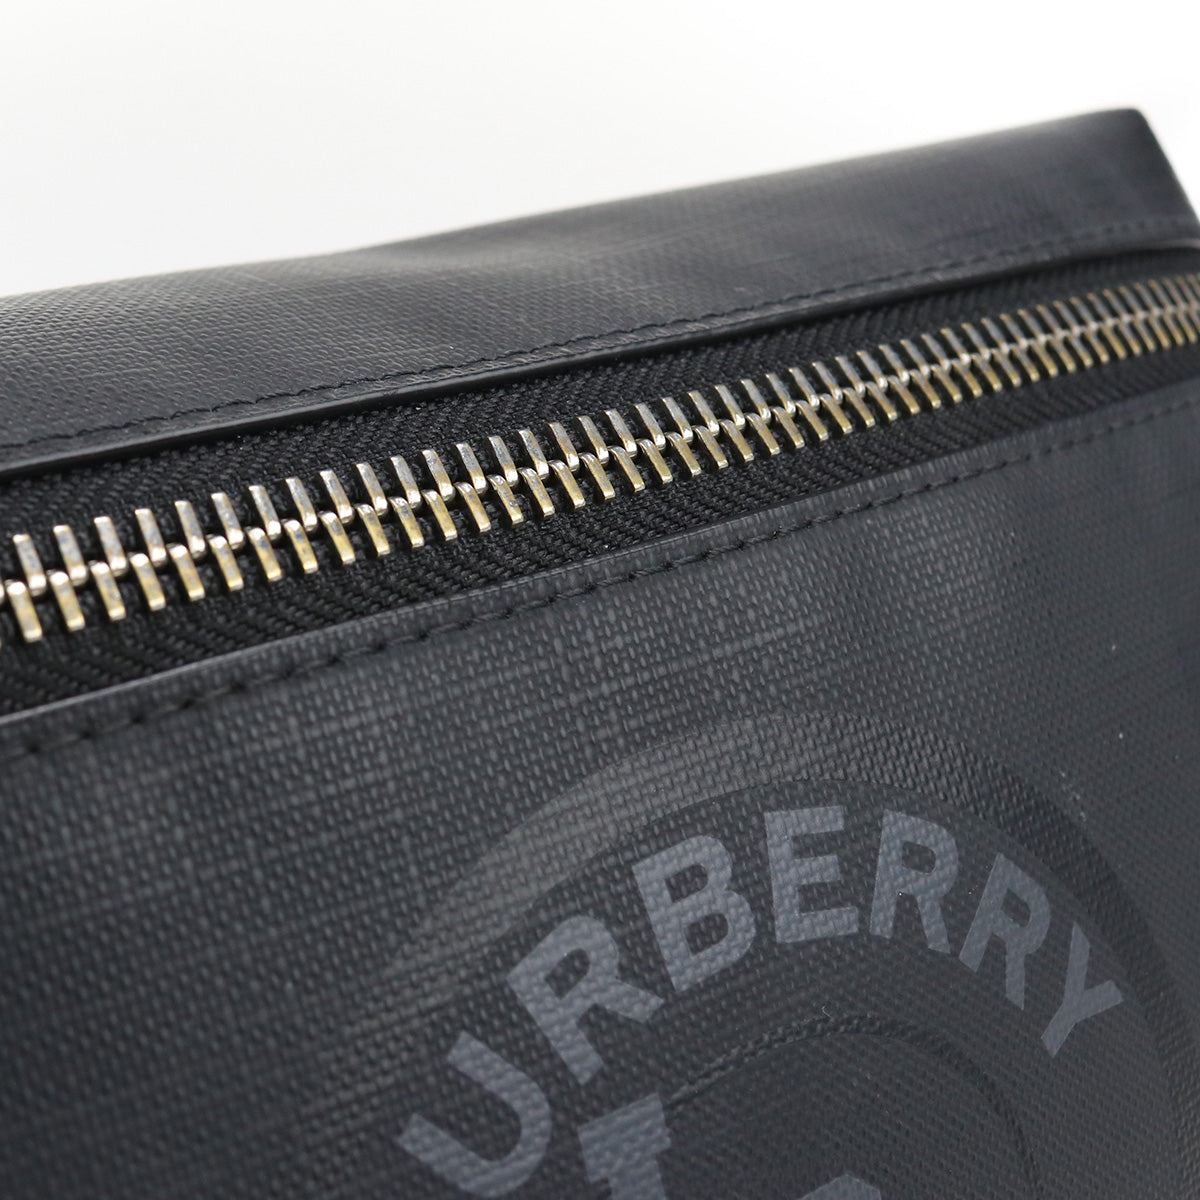 BURBERRY バーバリー ロゴグラフィッククロスボディ 8022517 ボディバッグ PVC【中古】 ユニセックス